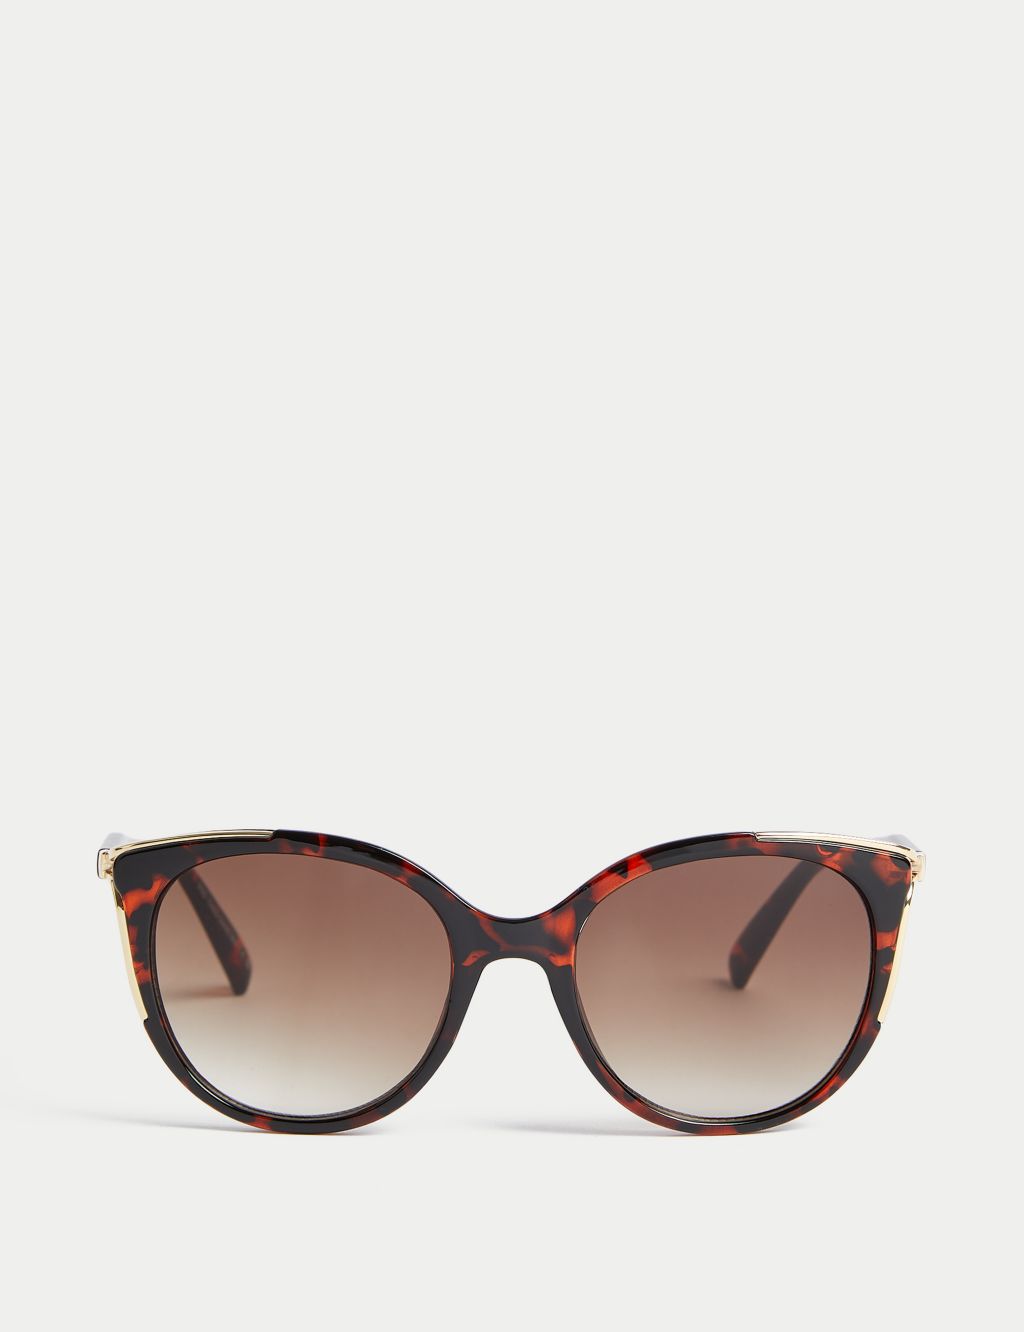 Women’s Sunglasses | M&S